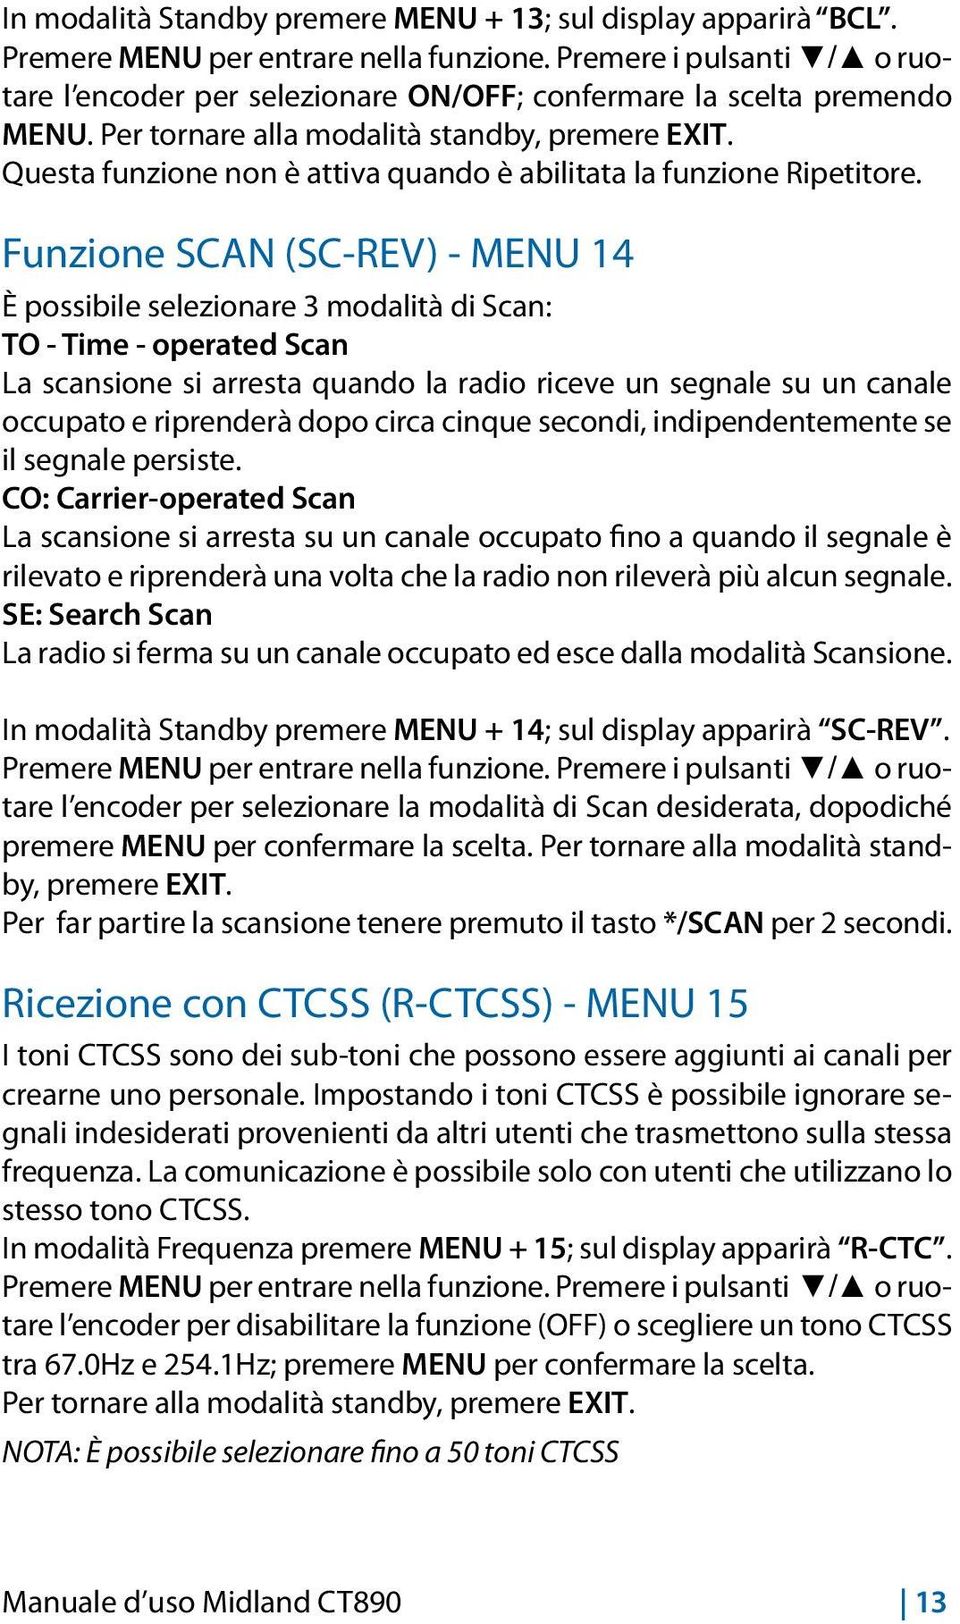 Funzione SCAN (SC-REV) - MENU 14 È possibile selezionare 3 modalità di Scan: TO - Time - operated Scan La scansione si arresta quando la radio riceve un segnale su un canale occupato e riprenderà